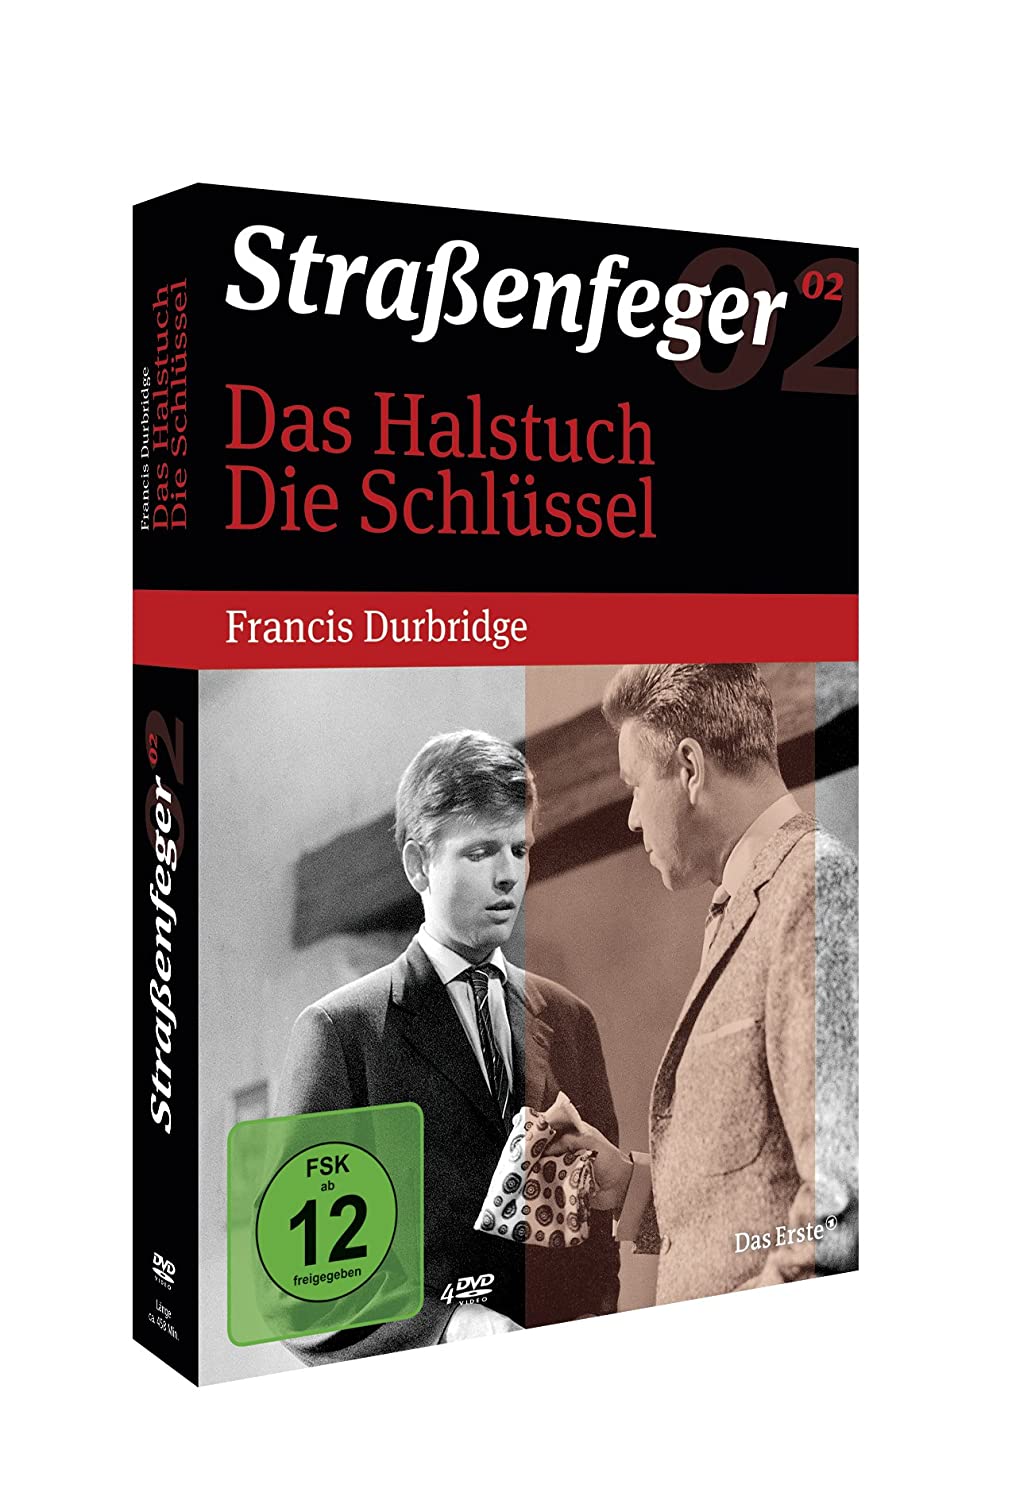 Straßenfeger 02 : Das Halstuch / Die Schlüssel (Francis Durbridge) (4 DVDs)